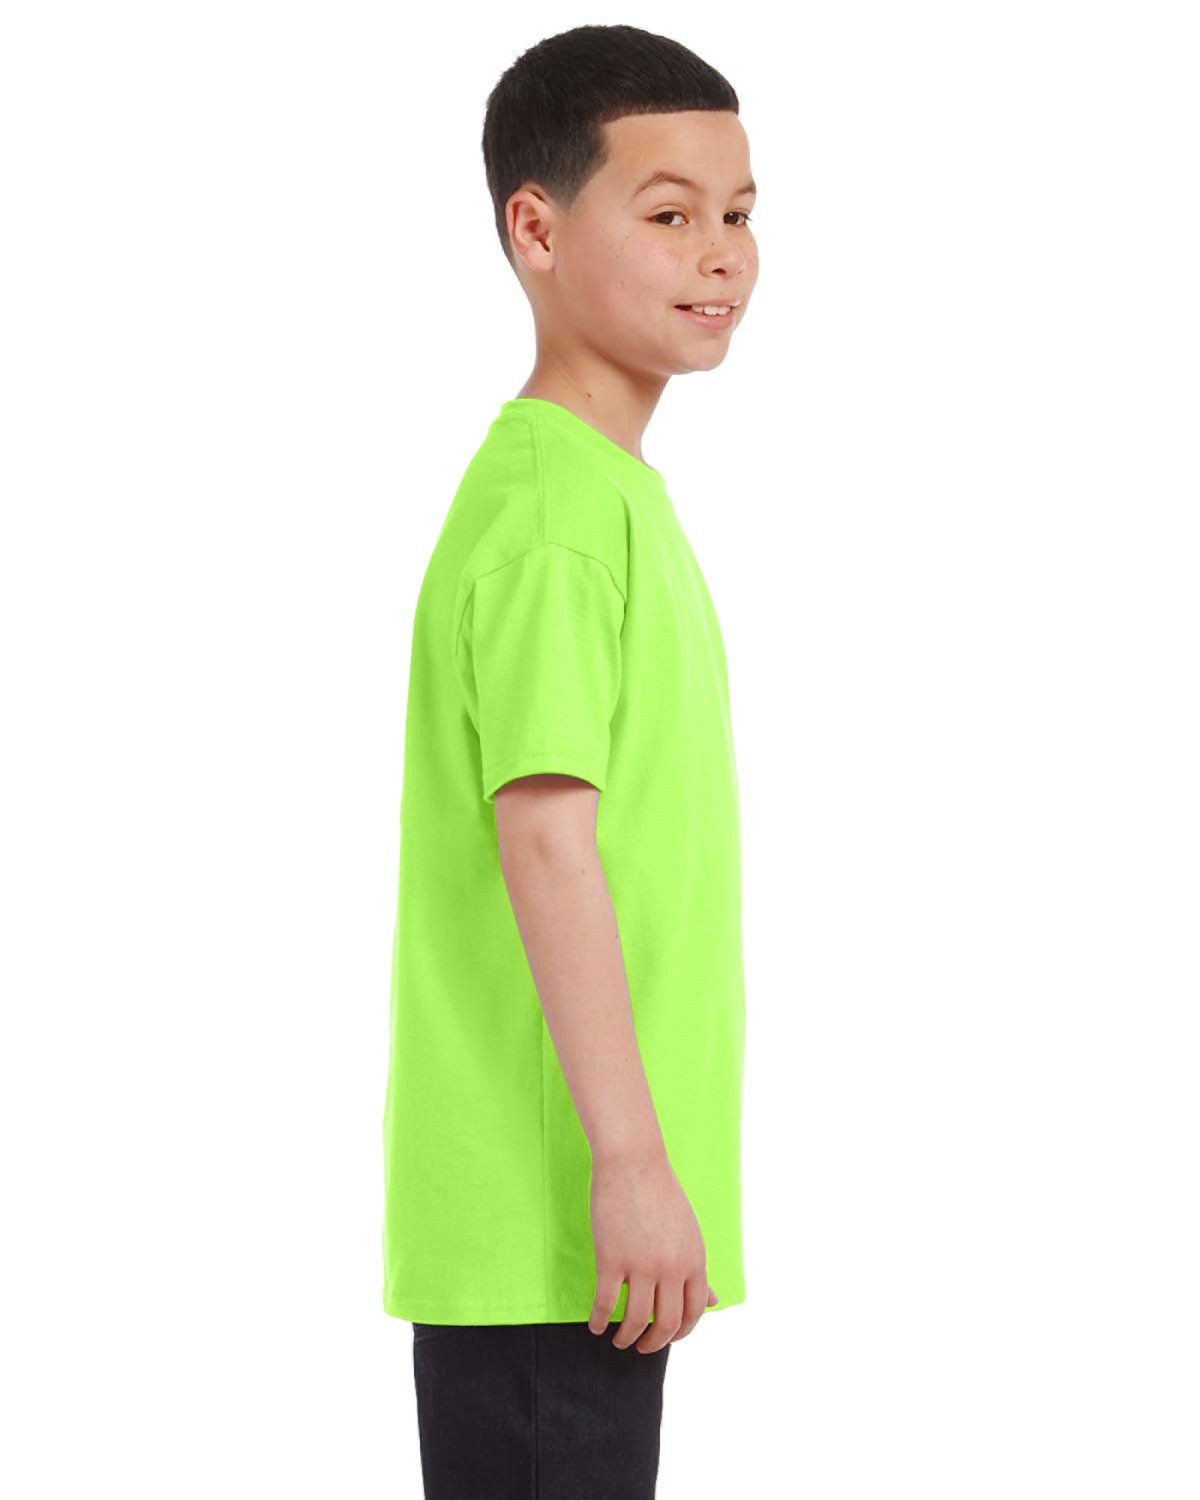 Shop High-Quality Gildan G500B Heavy Cotton Youth 5.3 oz. T-Shirt